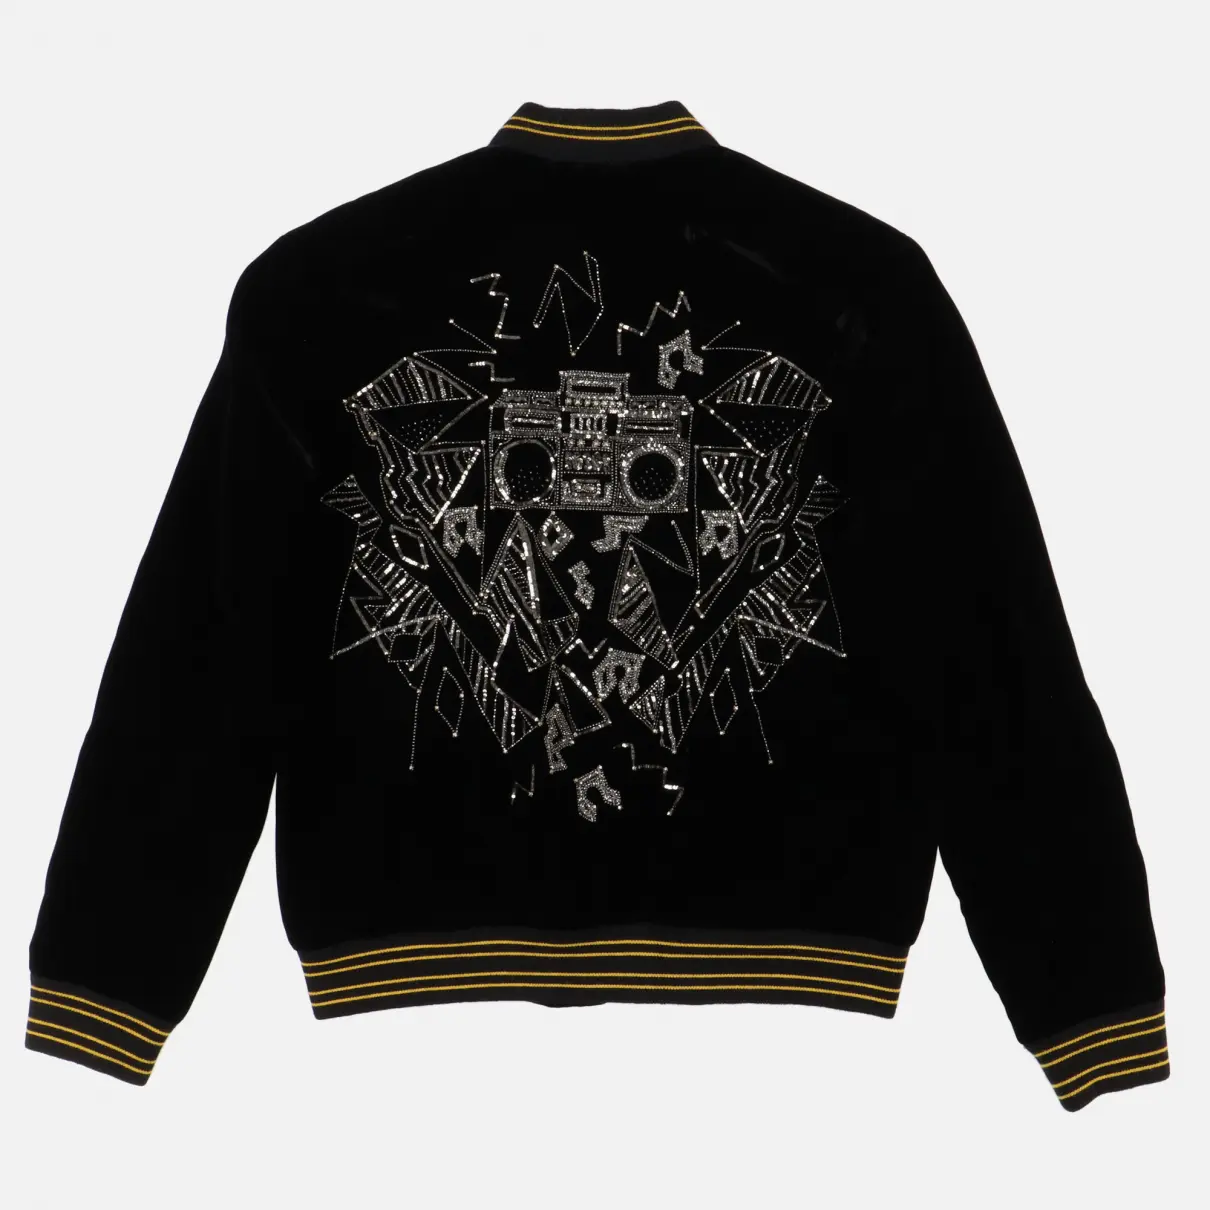 Buy Saint Laurent Velvet jacket online